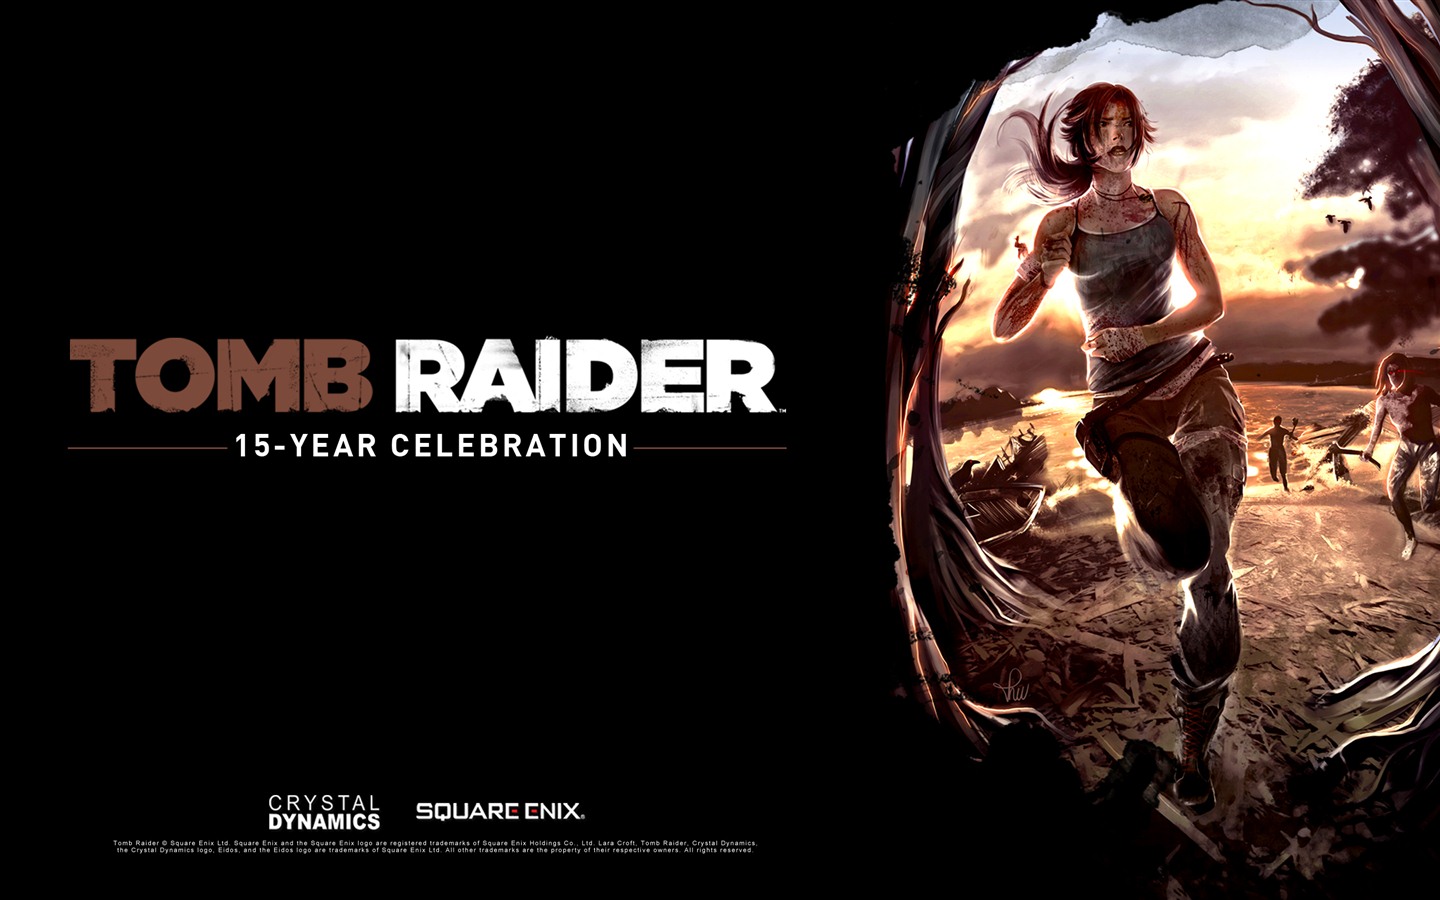 Tomb Raider 15-Year Celebration 古墓丽影15周年纪念版 高清壁纸8 - 1440x900